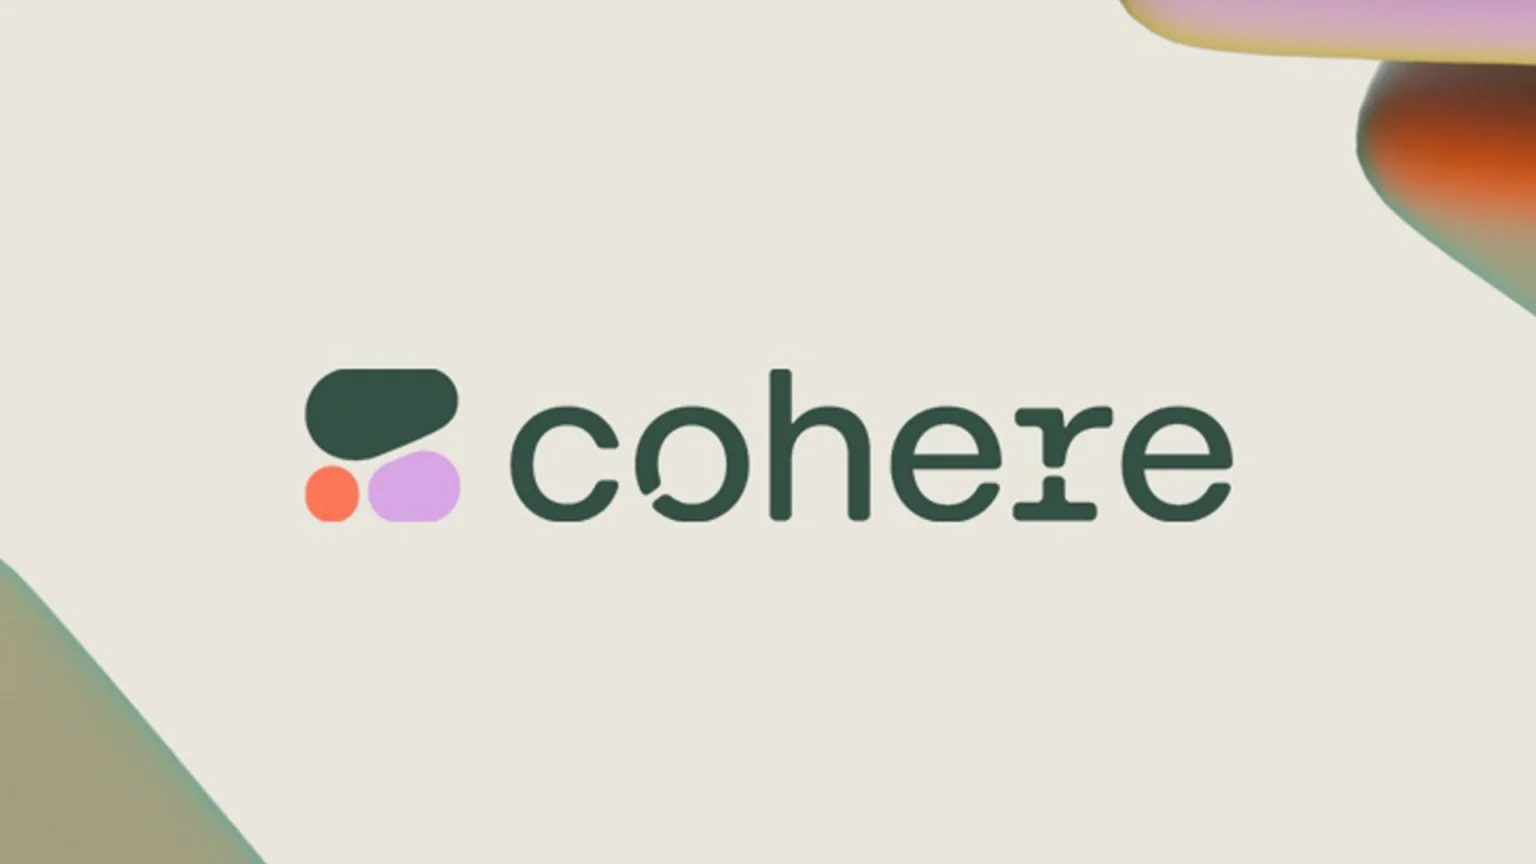 Üretken yapay zeka girişimi Cohere, 500 milyon dolar yatırım aldı